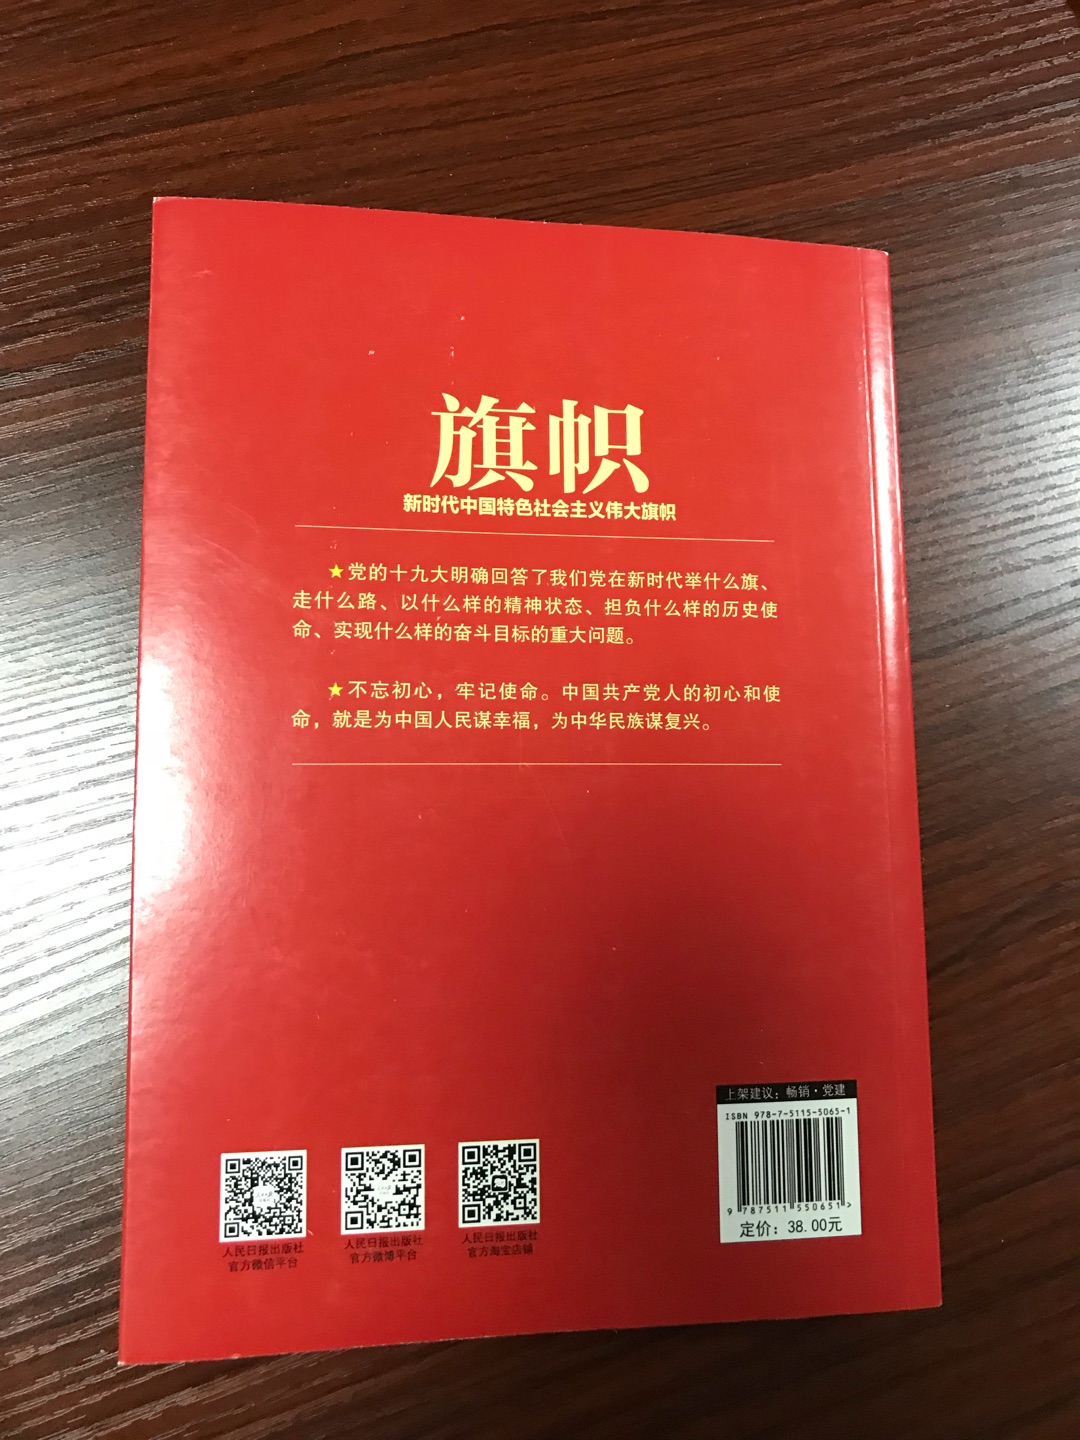 ????旗帜：新时代中国特色社会主义伟大旗帜/学习贯彻党的十九大精神重点主题图书挺好的